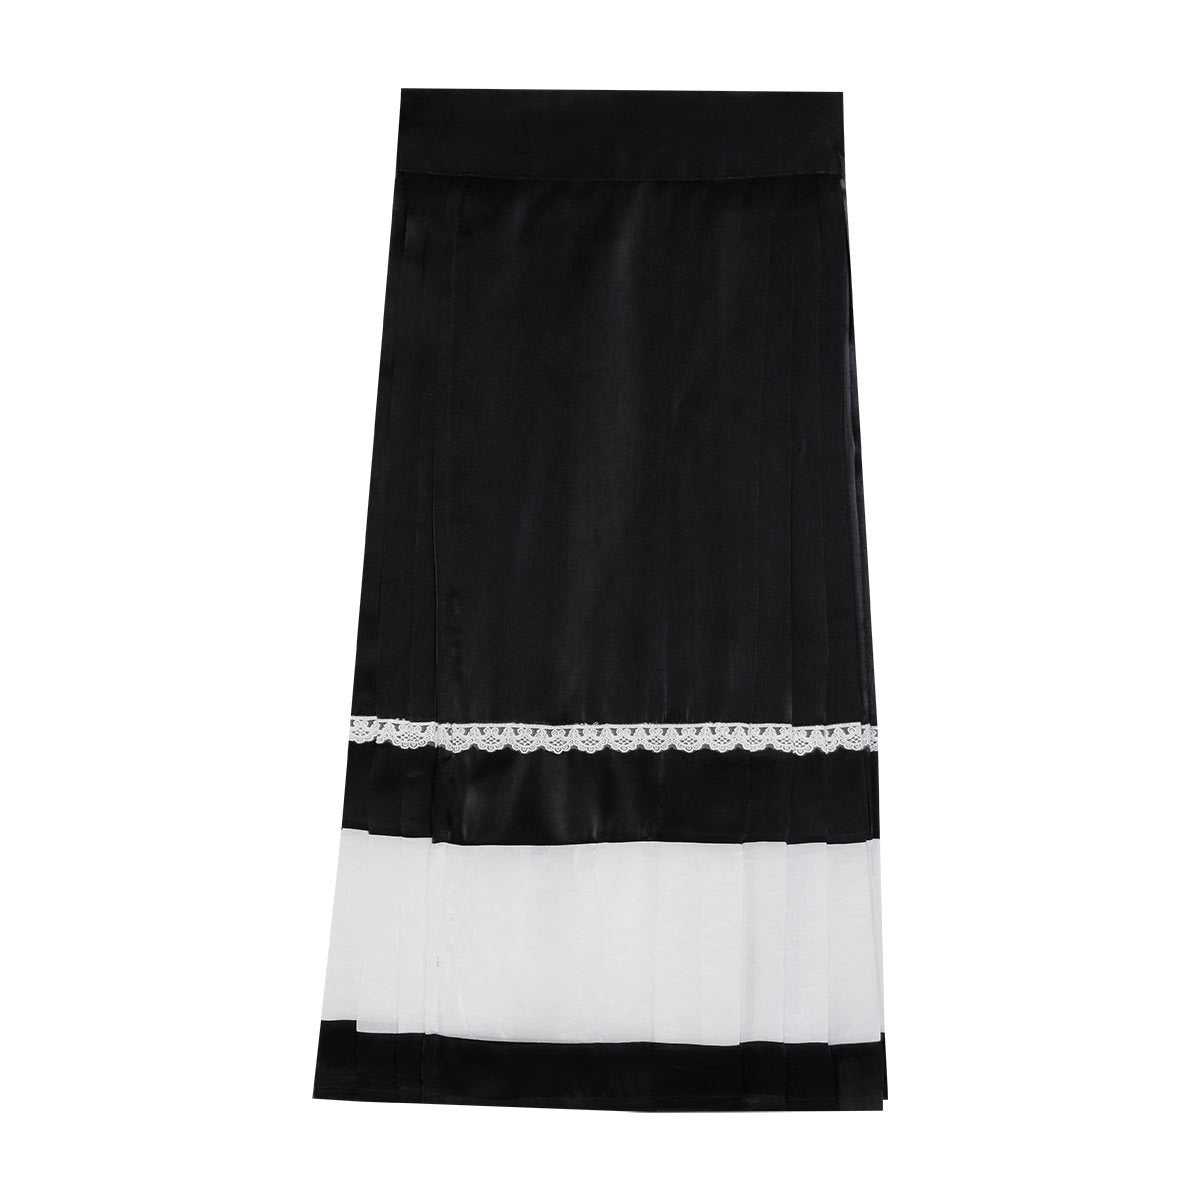 Floral White Shirt Black Bow Skirt Set SE22779